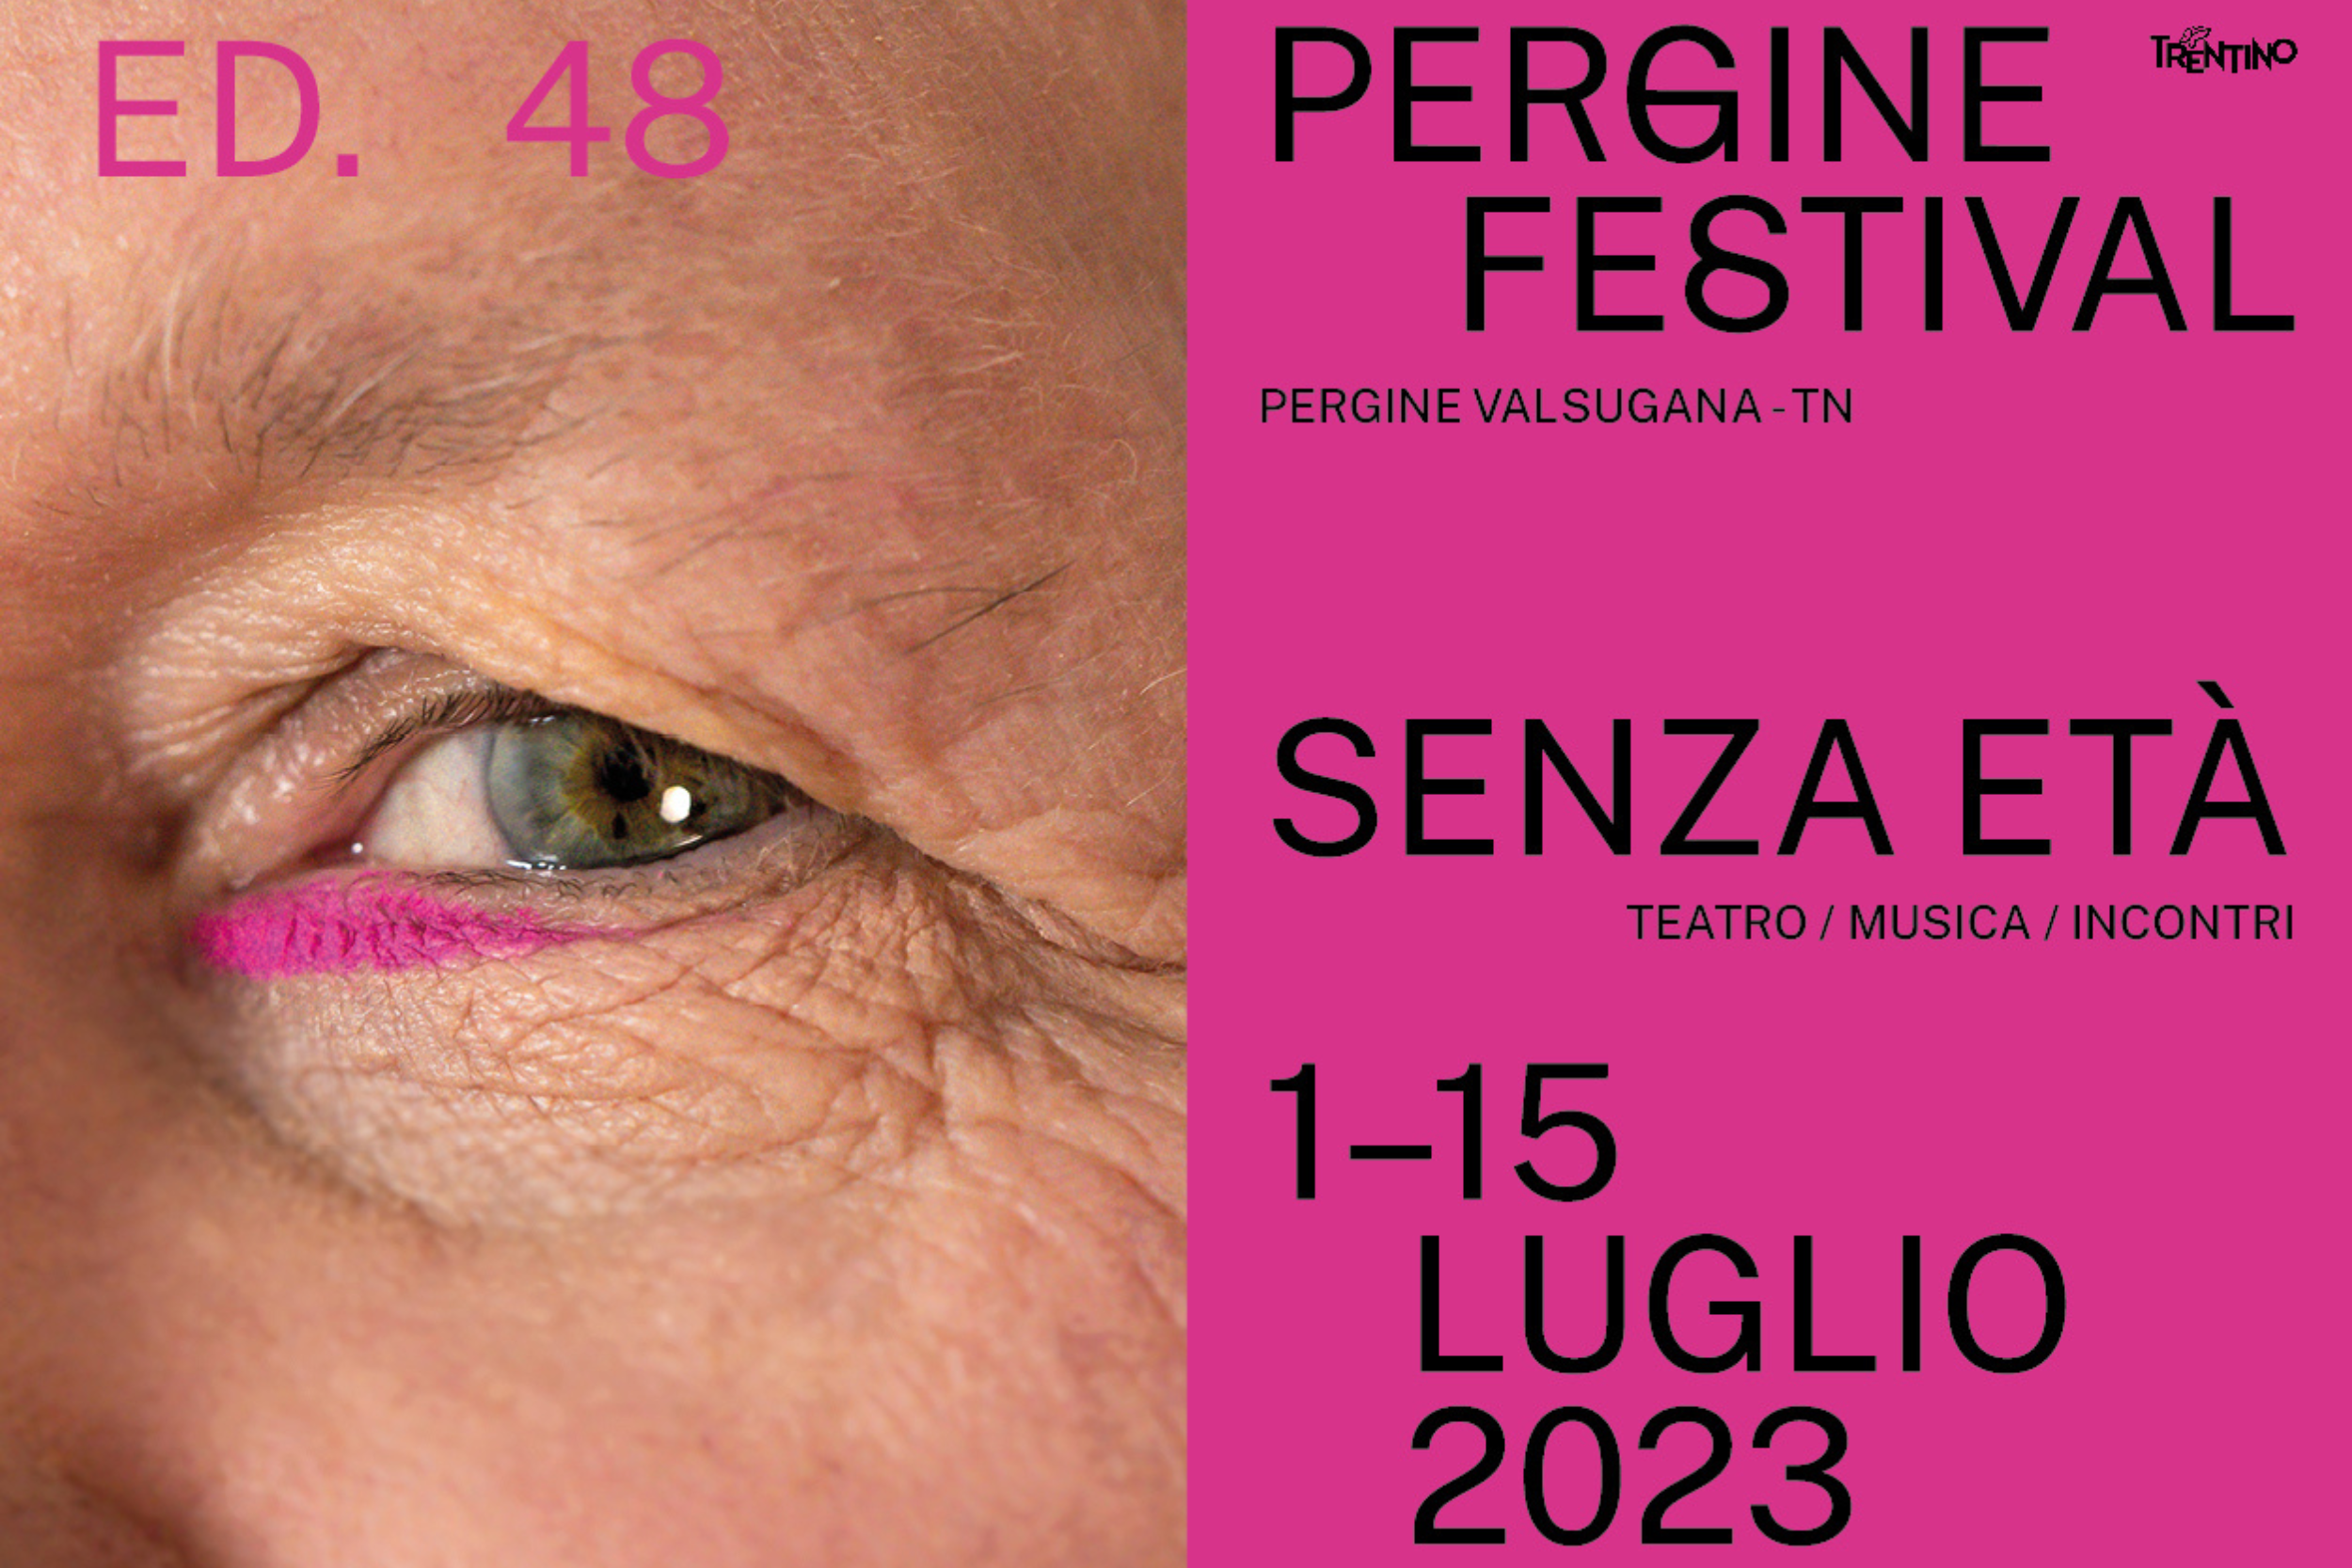 Pergine Festival lancia le date della nuova edizione: 1-15 luglio 2023. Il Festival avrà come titolo Senza età.